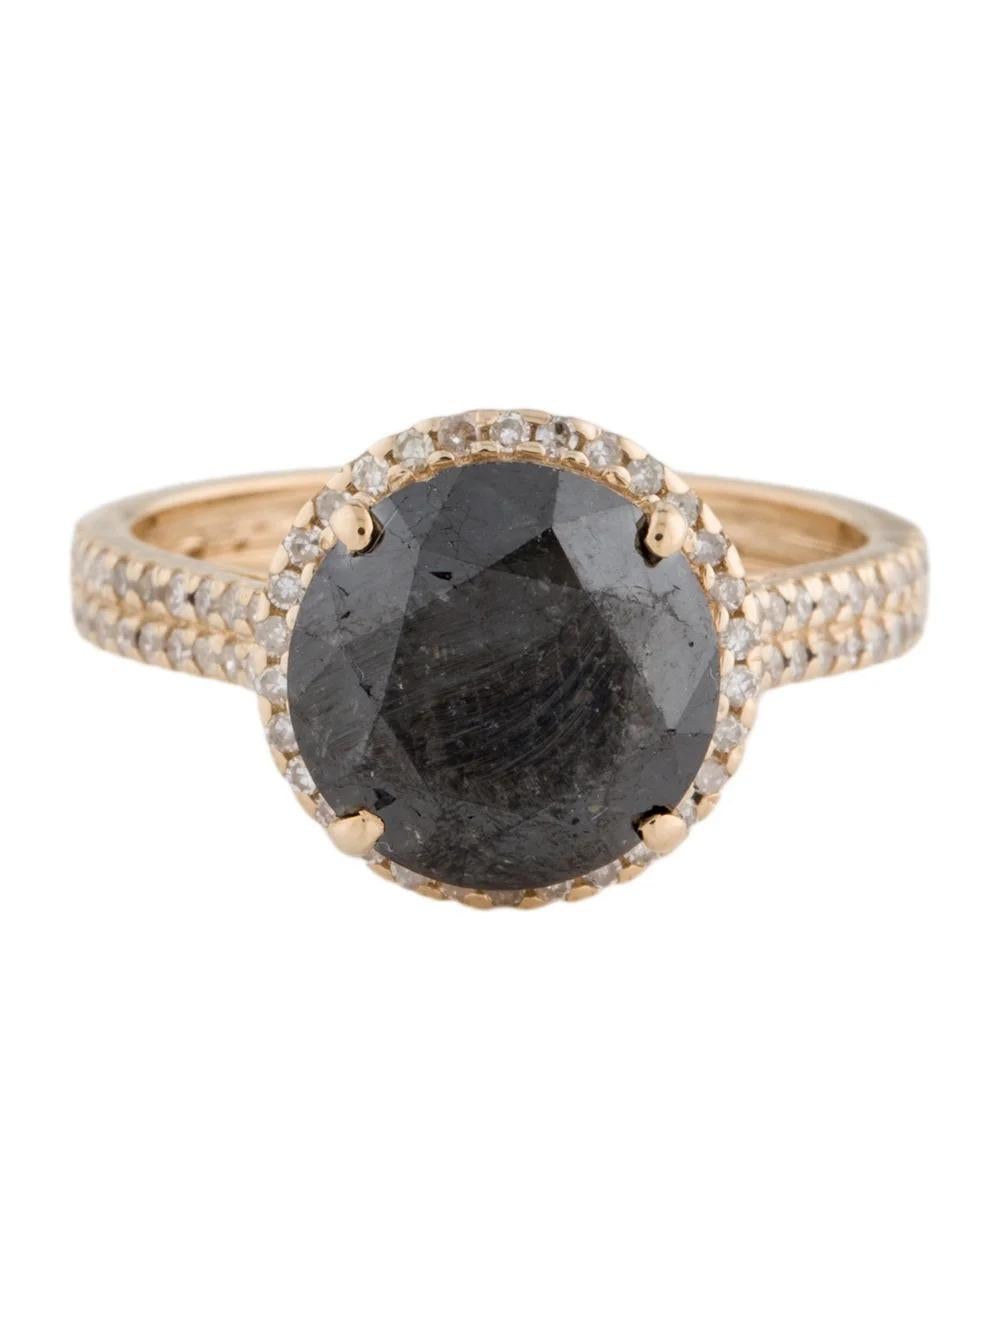 Round Cut 14K Diamond Halo Ring 4.38ctw - Size 6.75 - Fine Jewelry, Statement Piece